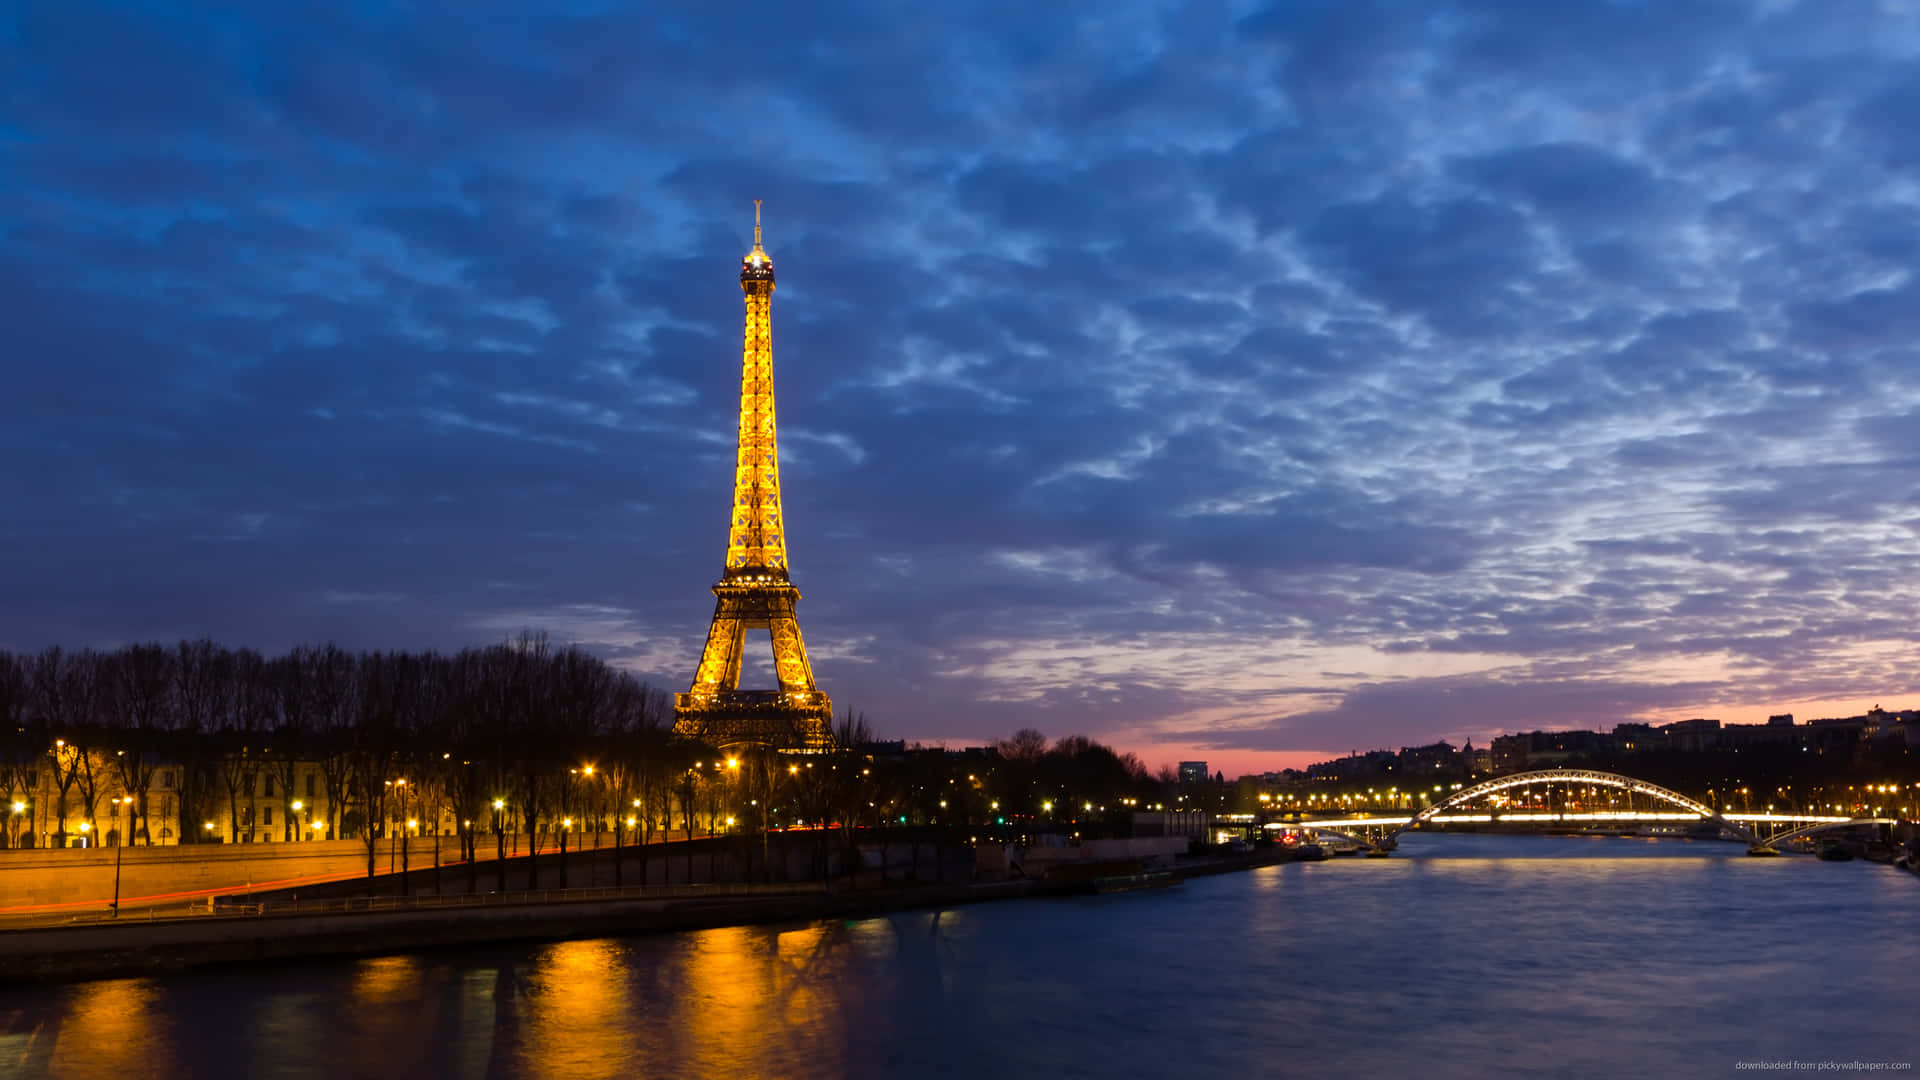 Imagendel Paisaje De La Torre Eiffel De Noche